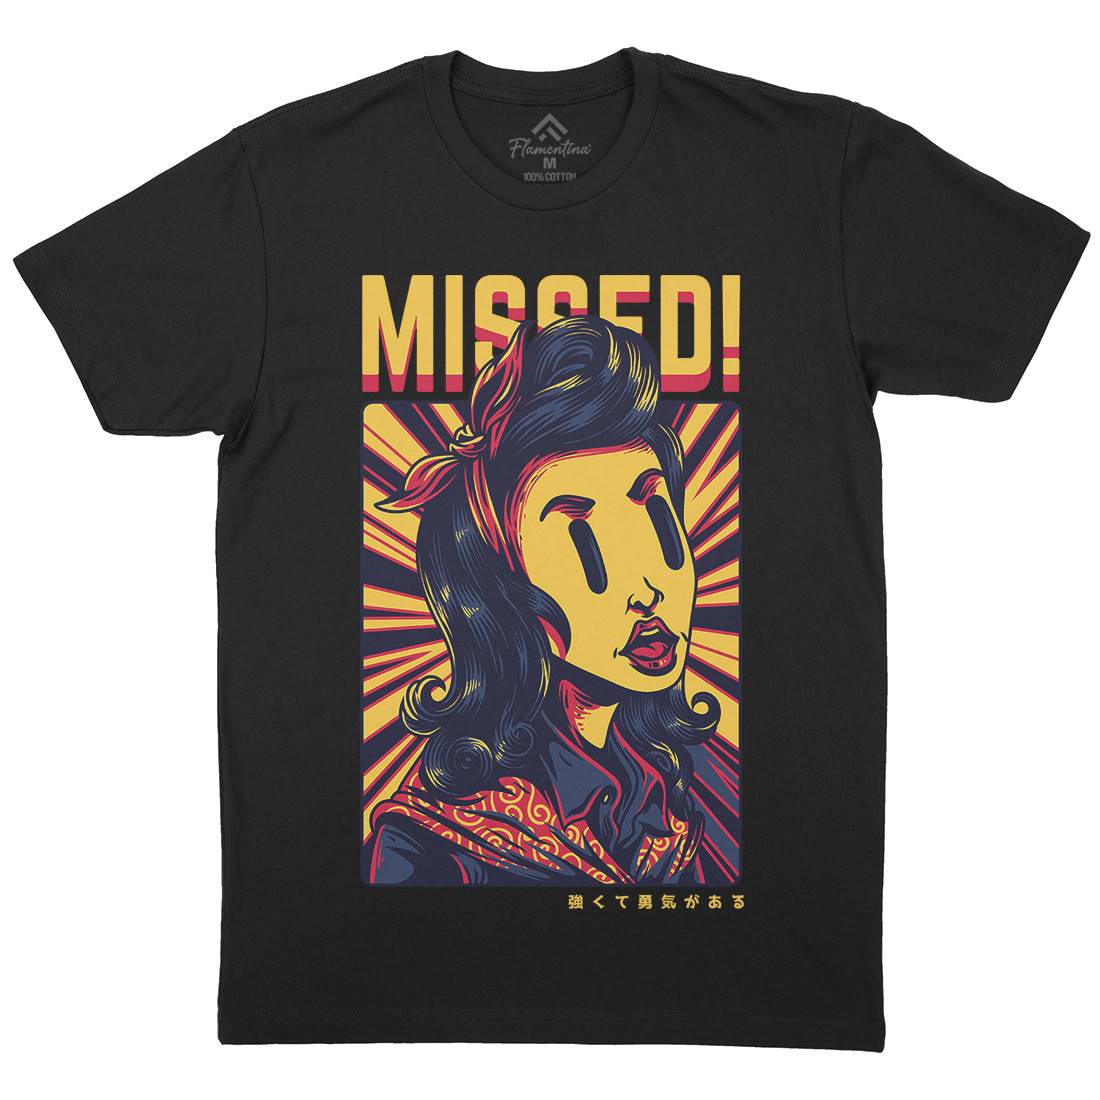 Missed Girl Mens Crew Neck T-Shirt Retro D654